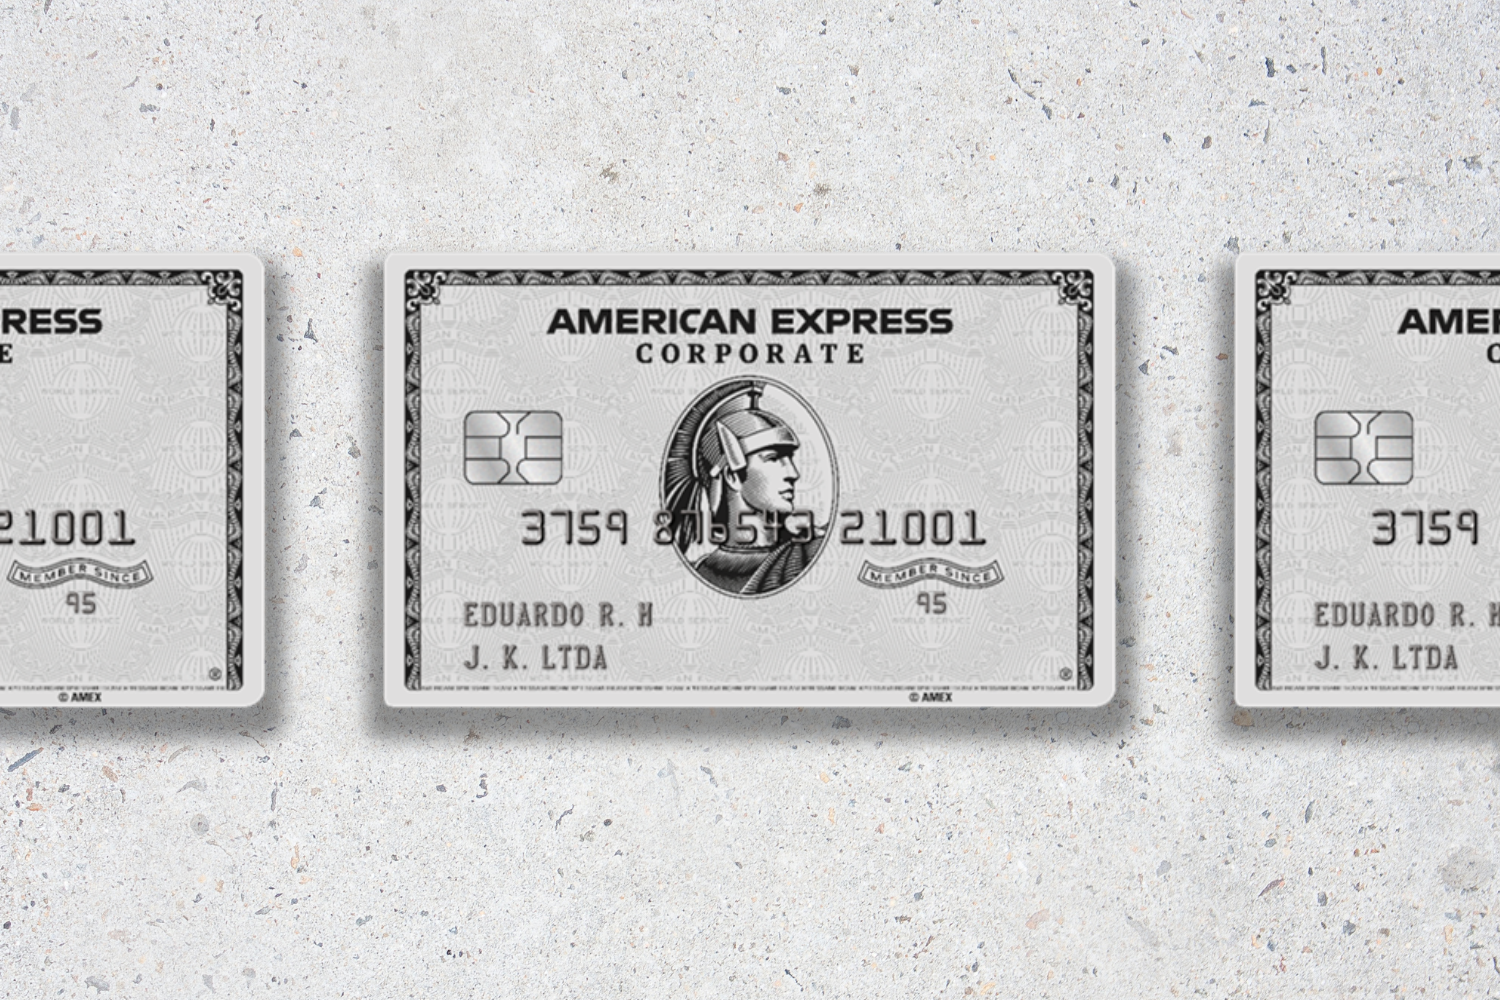 Cartão de crédito corporativo Amex Platinum